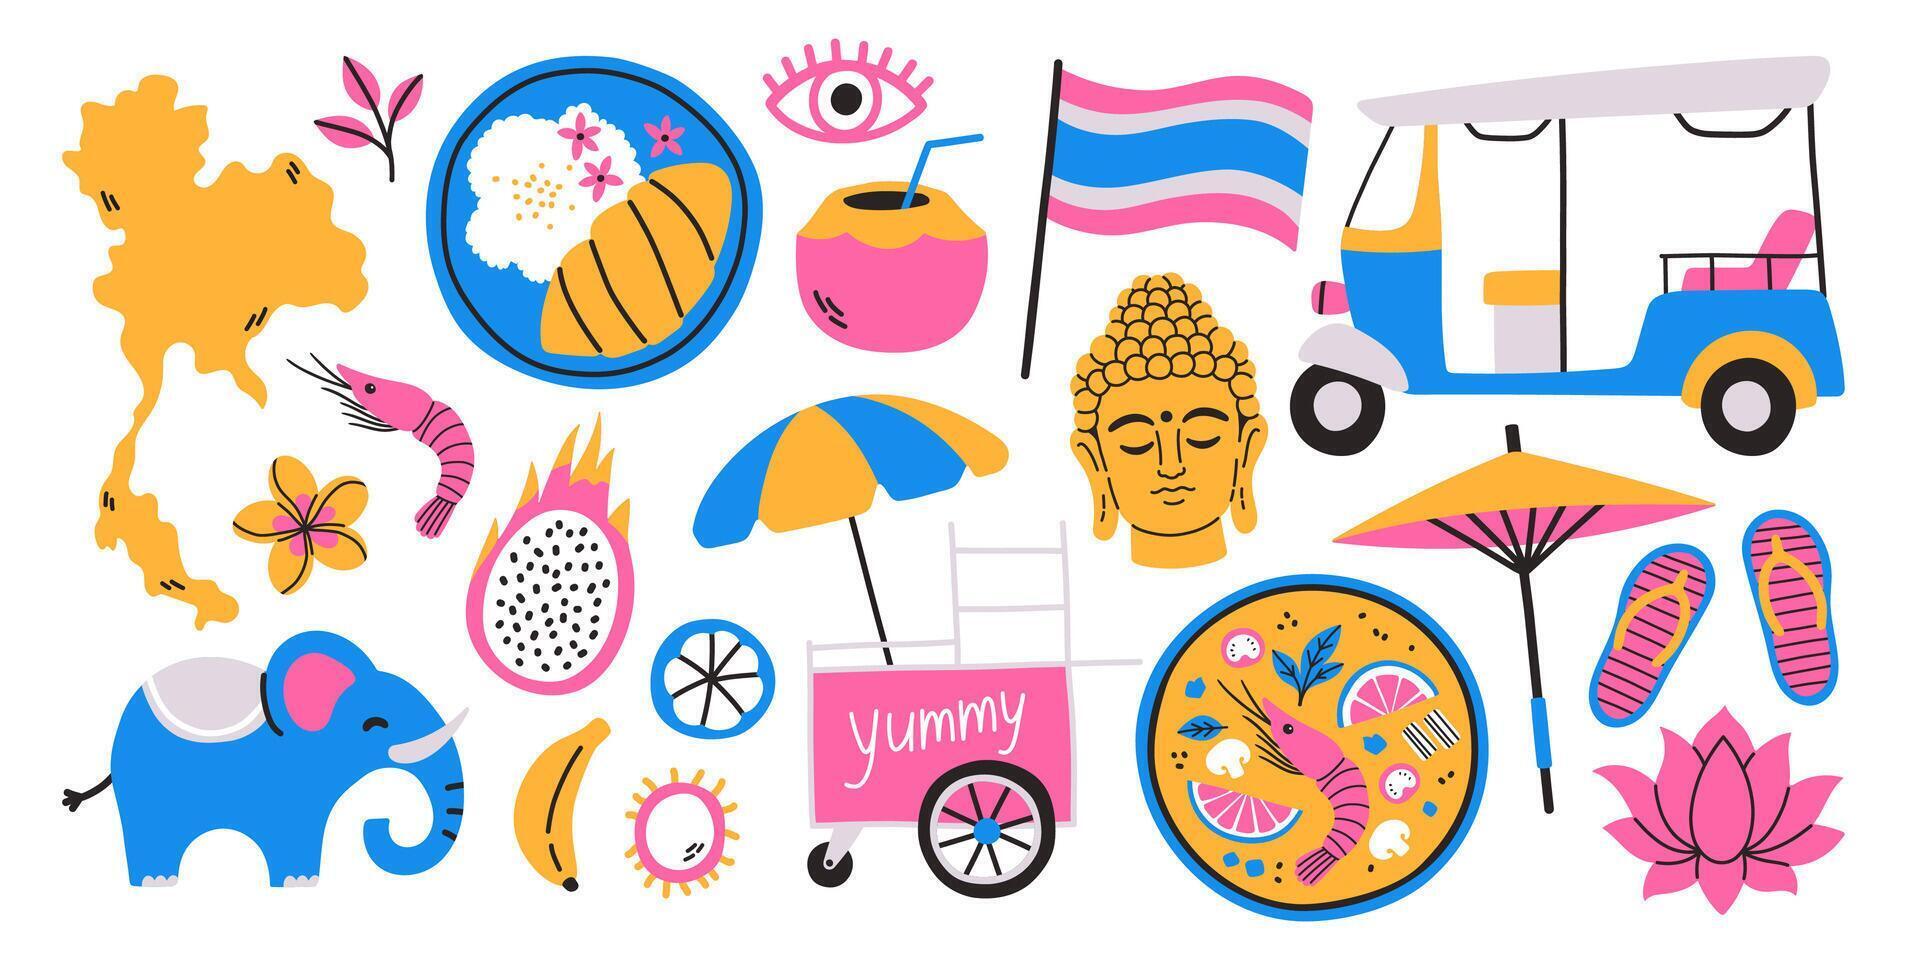 Reise zu Thailand Aufkleber Satz. Hand Zeichnung skizzieren von Objekte. Elefant, Karte von Thailand, thailändisch Essen, Tuk Tuk Rikscha, Regenschirm, Buddha Kopf, Lotus, thailändisch Früchte. vektor